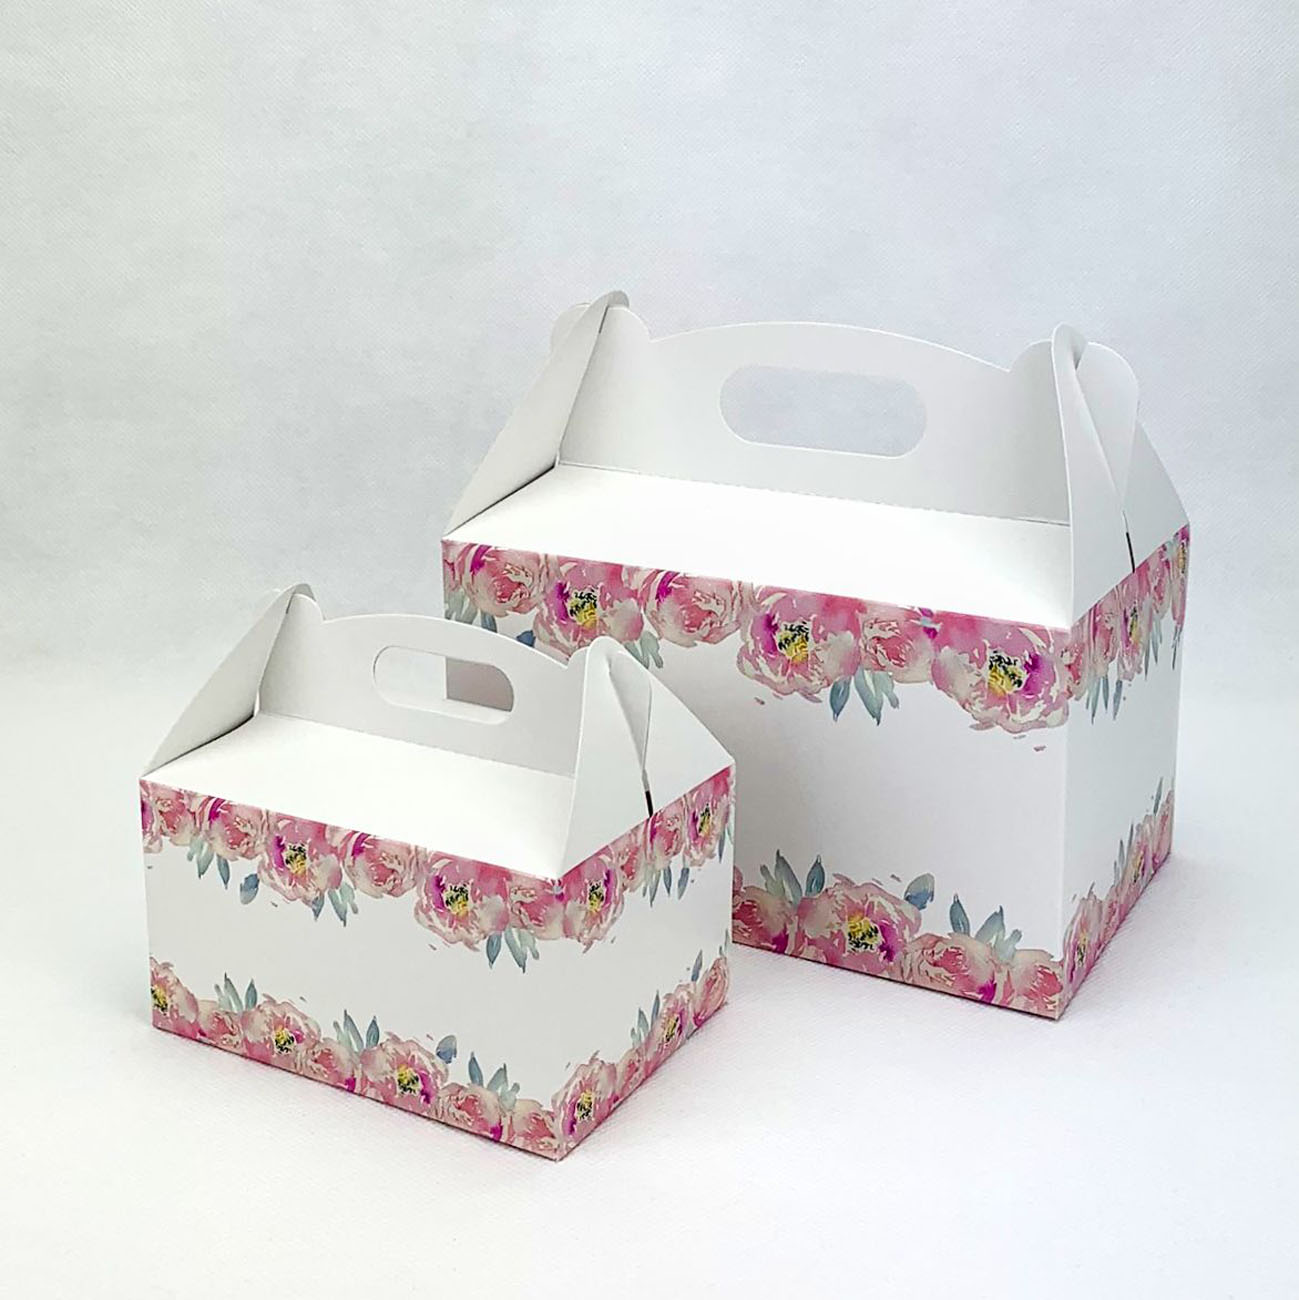 Svatební krabička střední s květy pivoněk - K56-4002-01